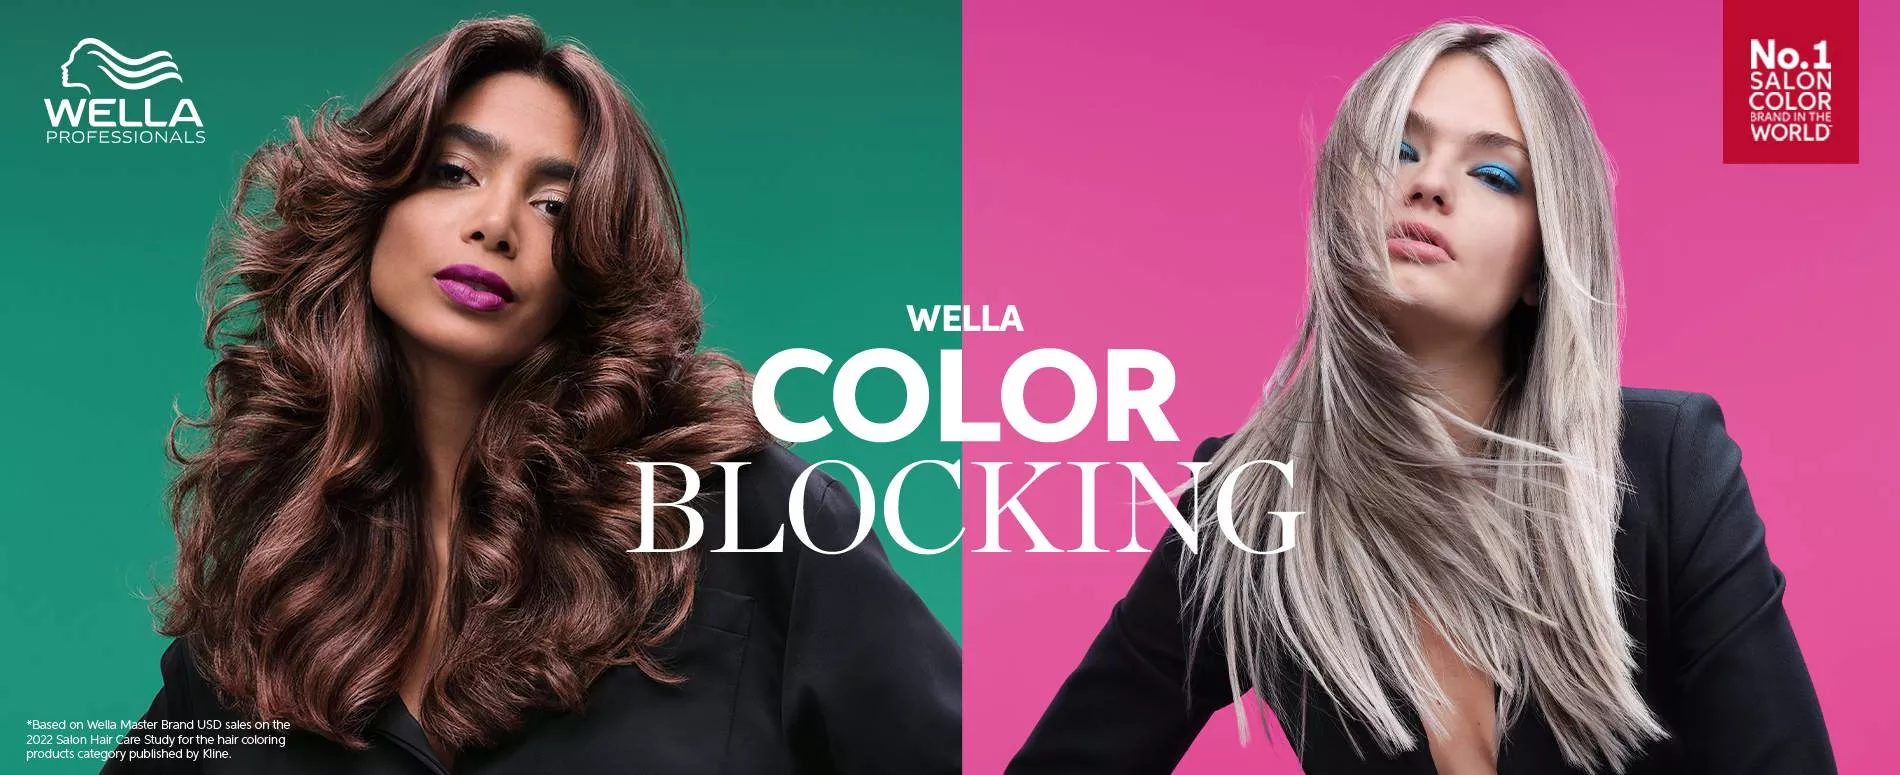 Braunhaariges Model vor grünem Hintergrund und blondes Model vor pinkfarbenem Hintergrund präsentieren Wella Color Blocking